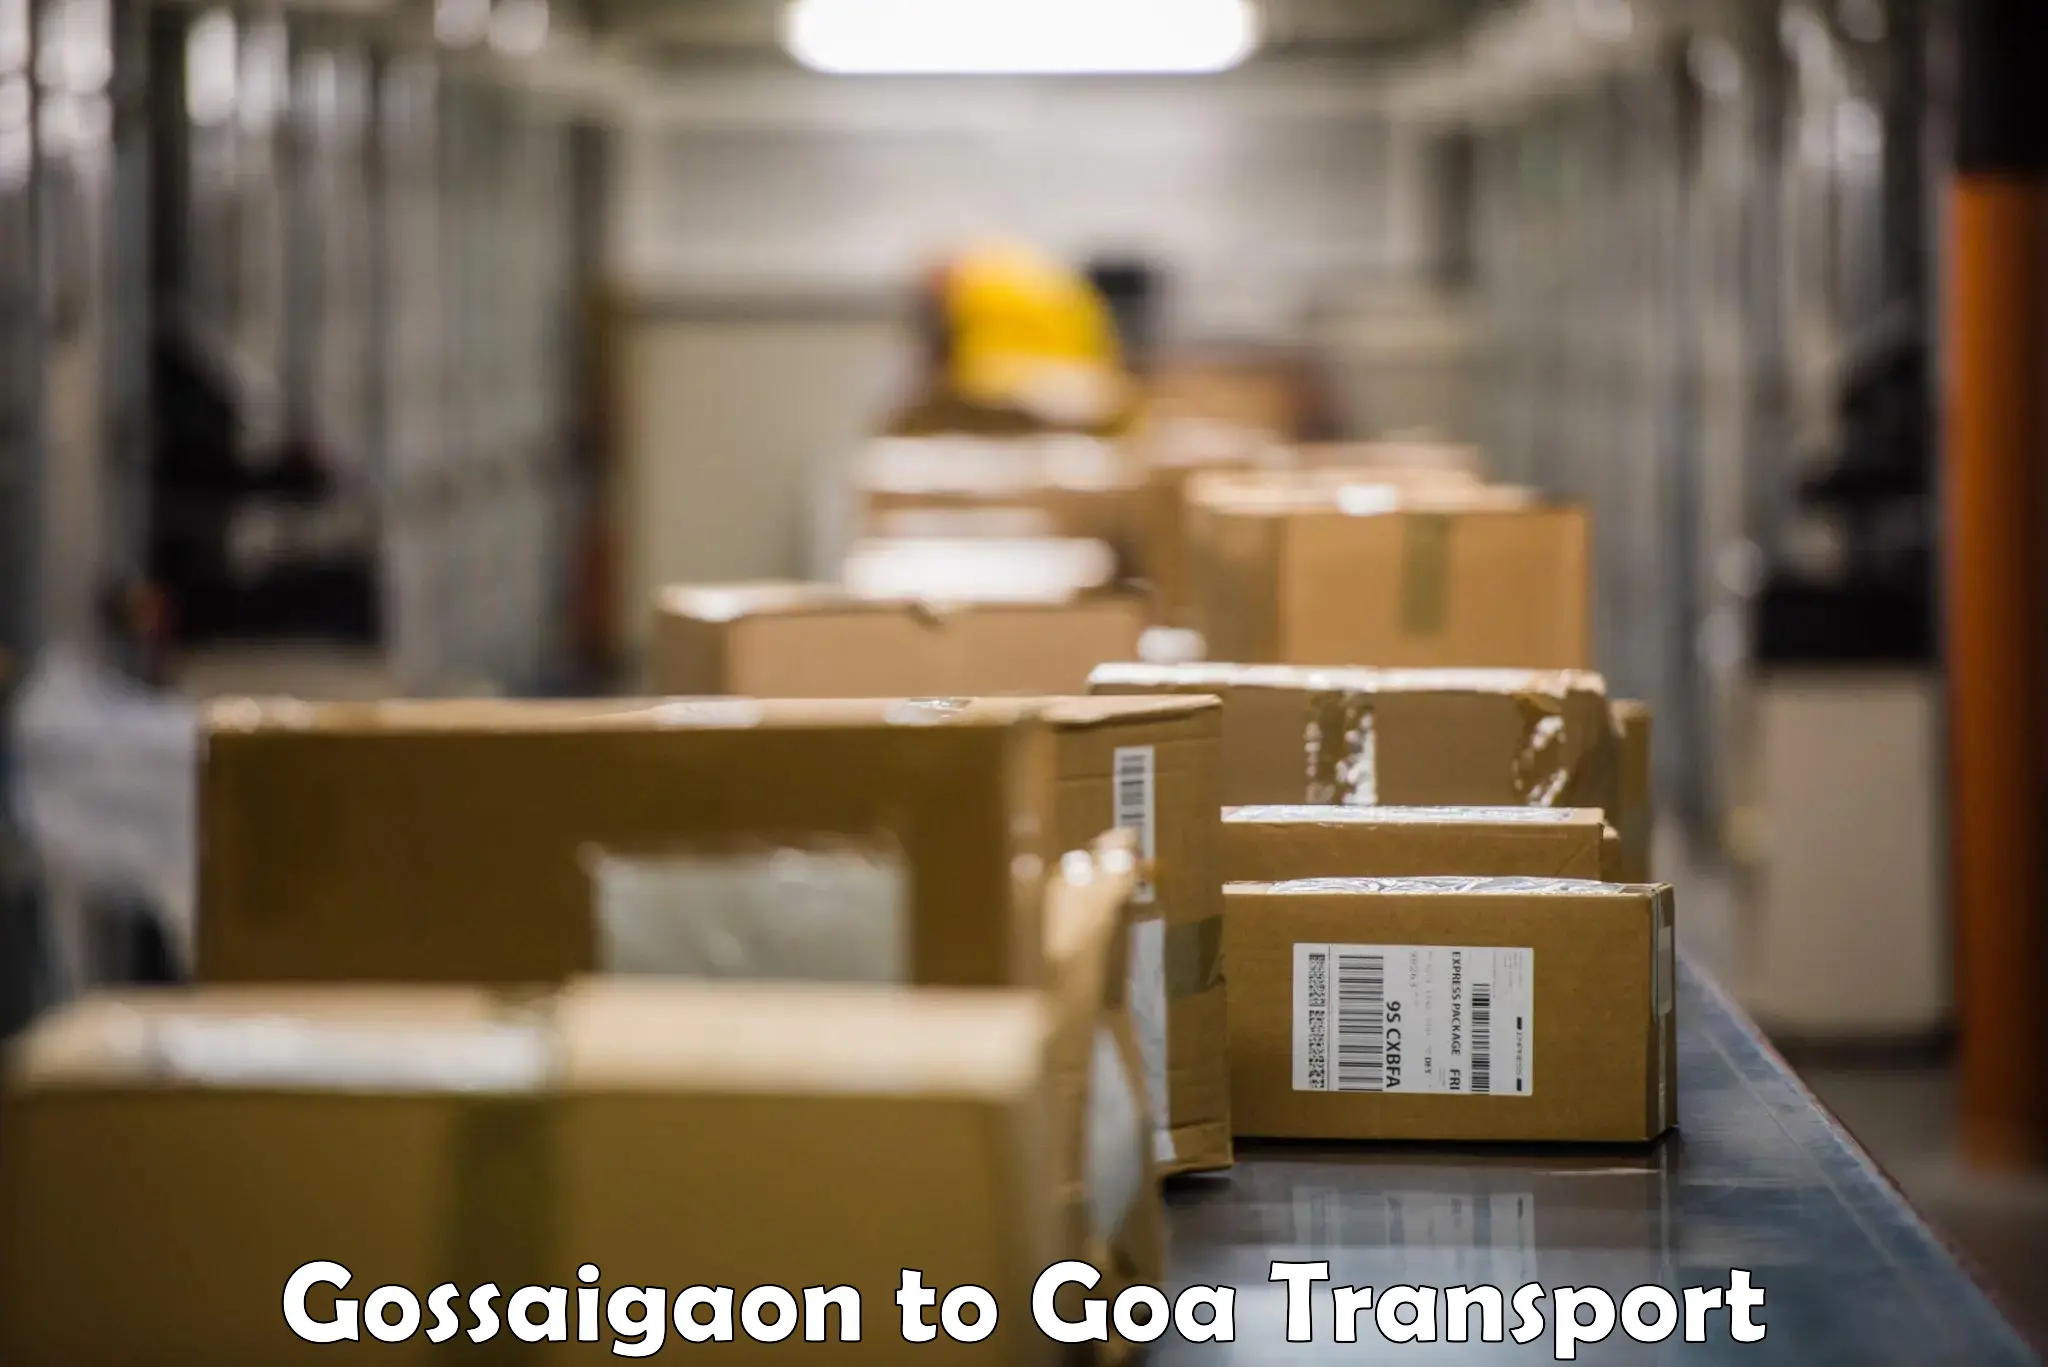 Delivery service Gossaigaon to Mormugao Port